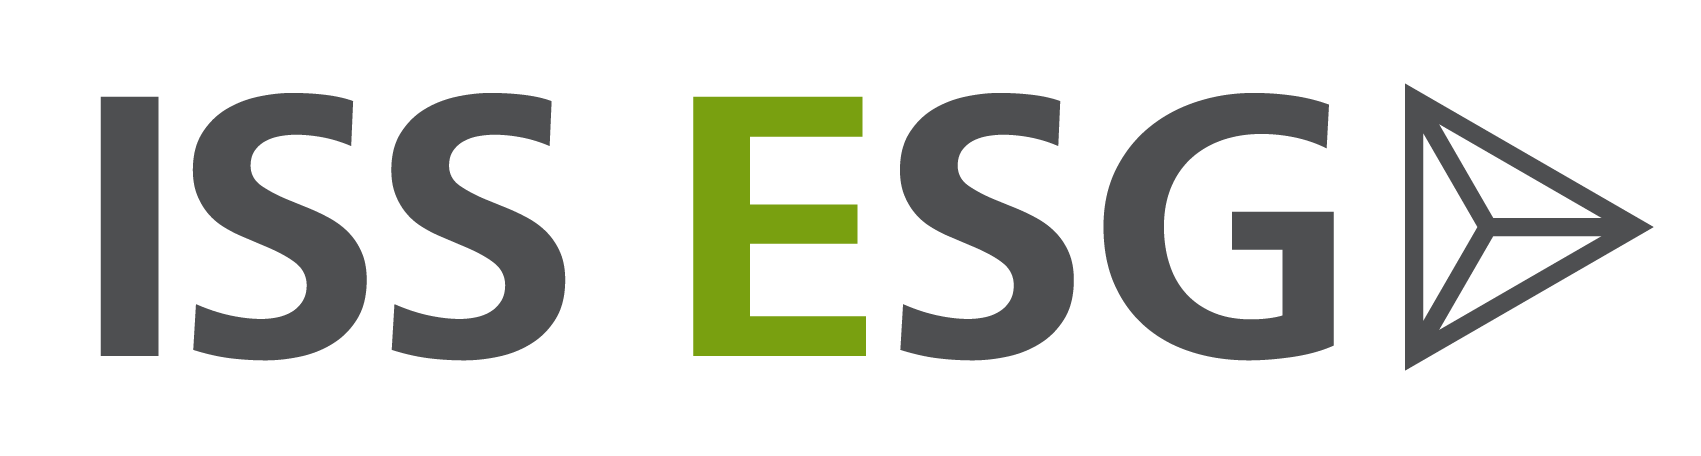 Банк esg. ESG. ESG эмблема. ESG проекты. ISS ESG rating.